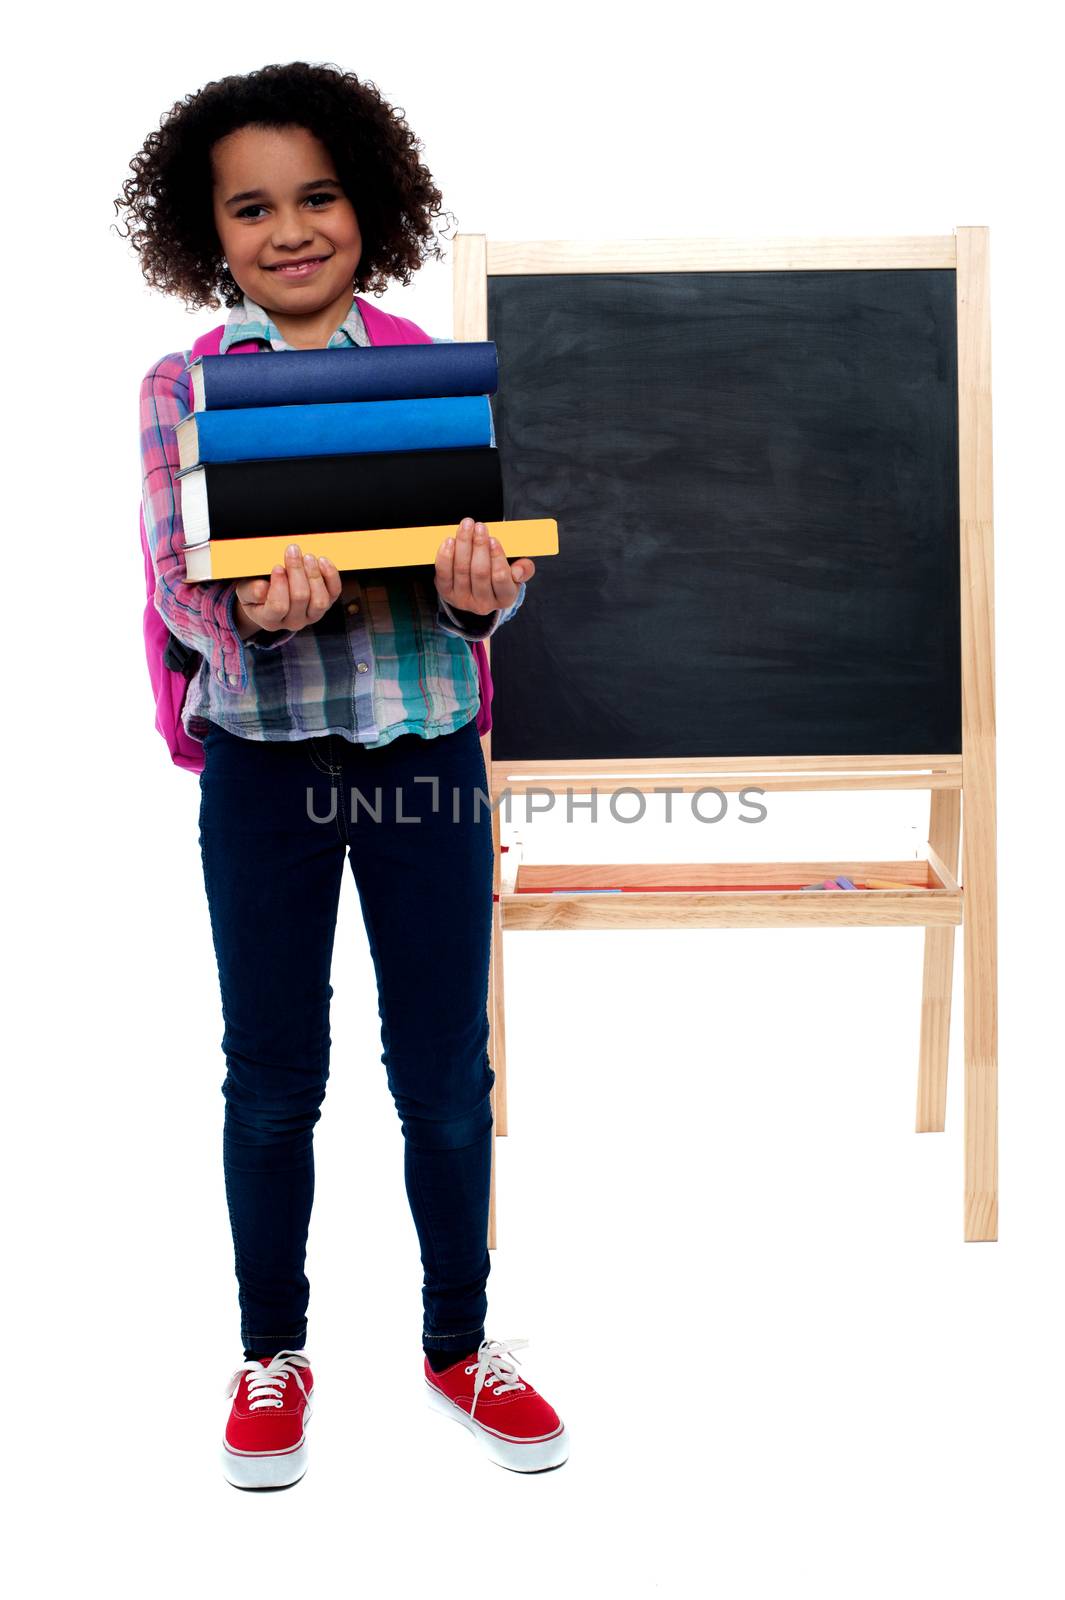 Smiling little girl carrying school books over white